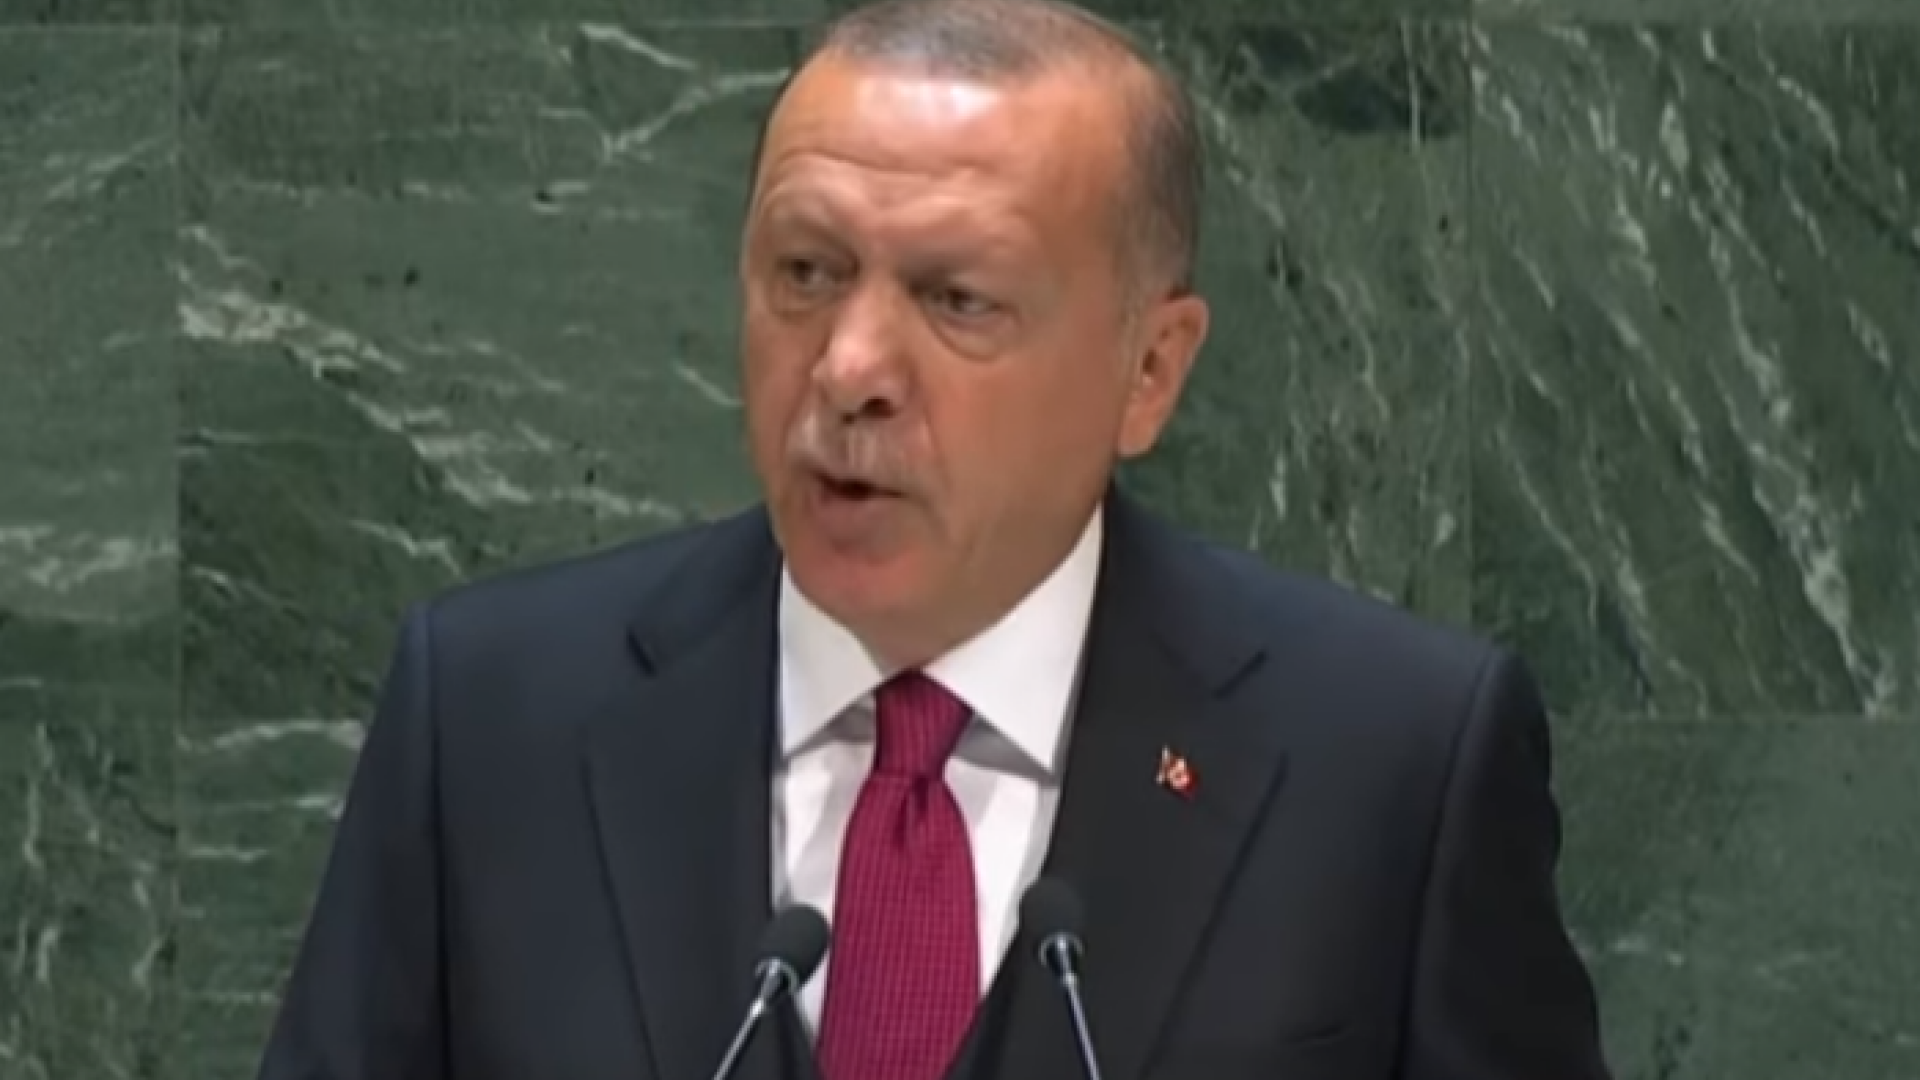 Erdogan vrea ca toţi să aibă arme nucleare sau niciunul